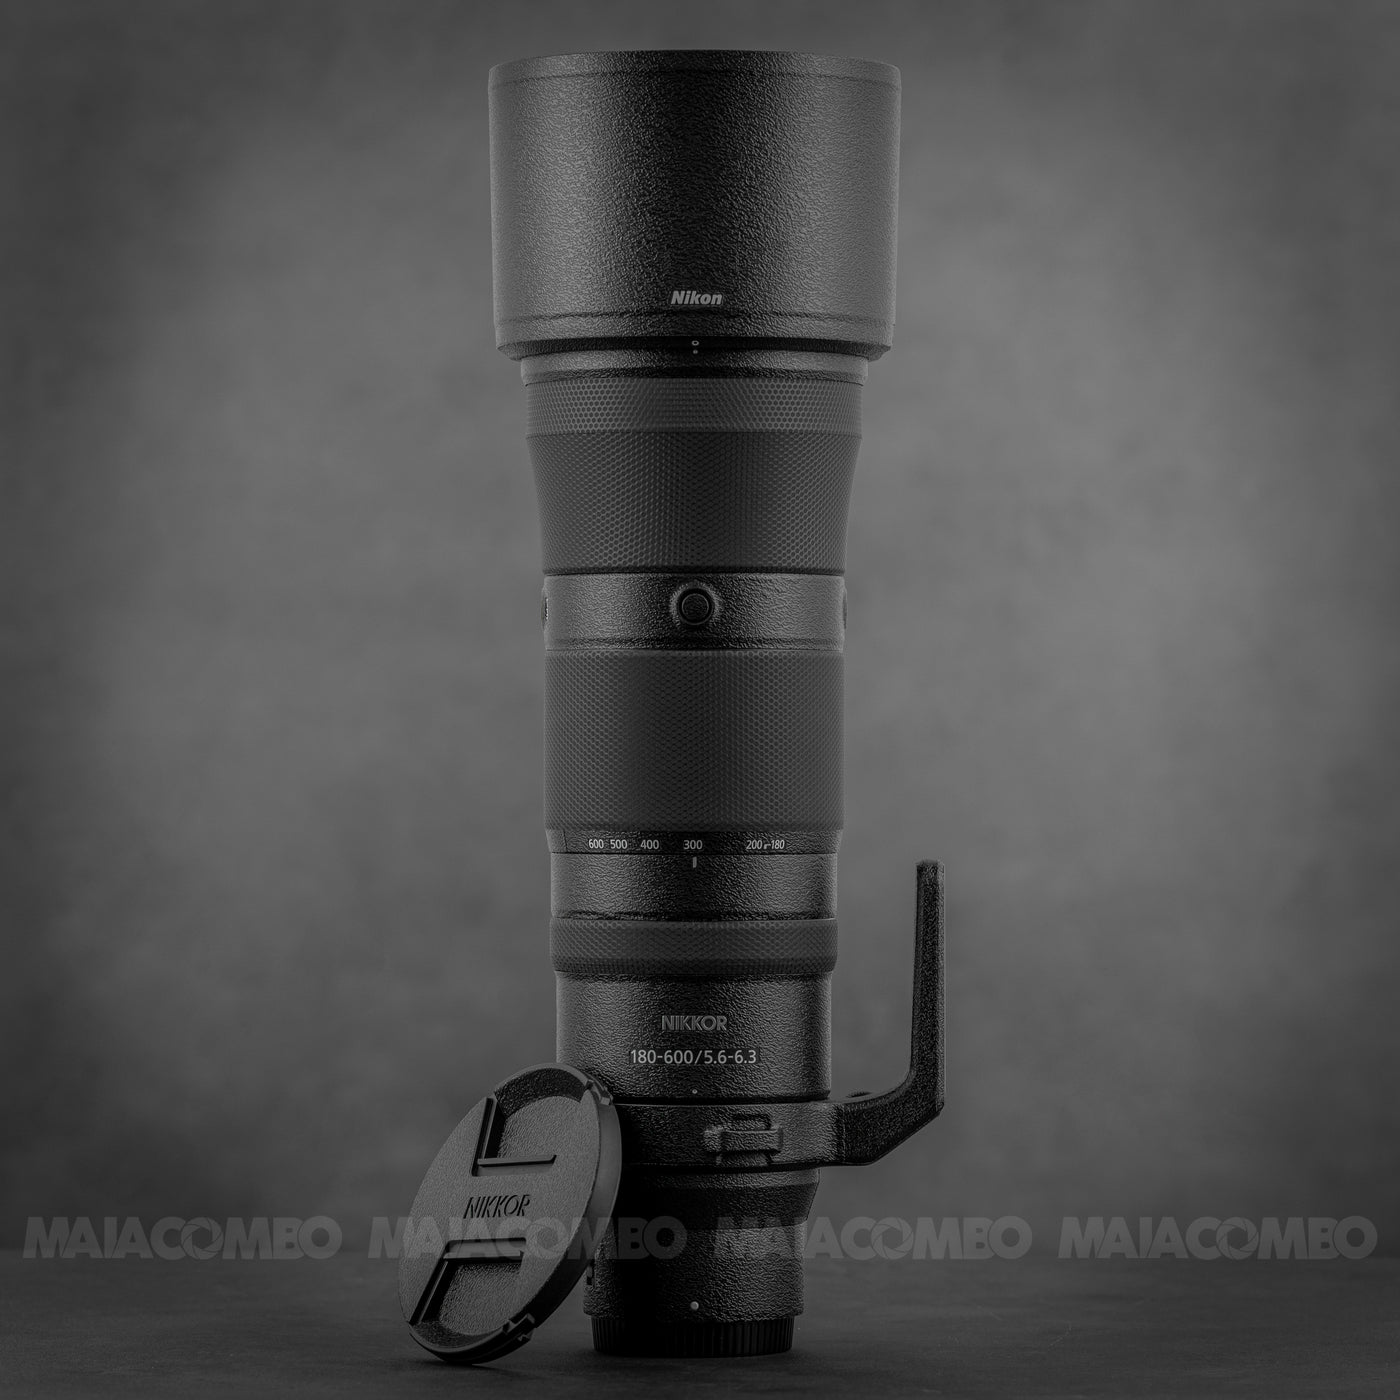 Nikon NIKKOR Z 180-600mm f/5.6-6.3 VR Lens Skin/ Wrap